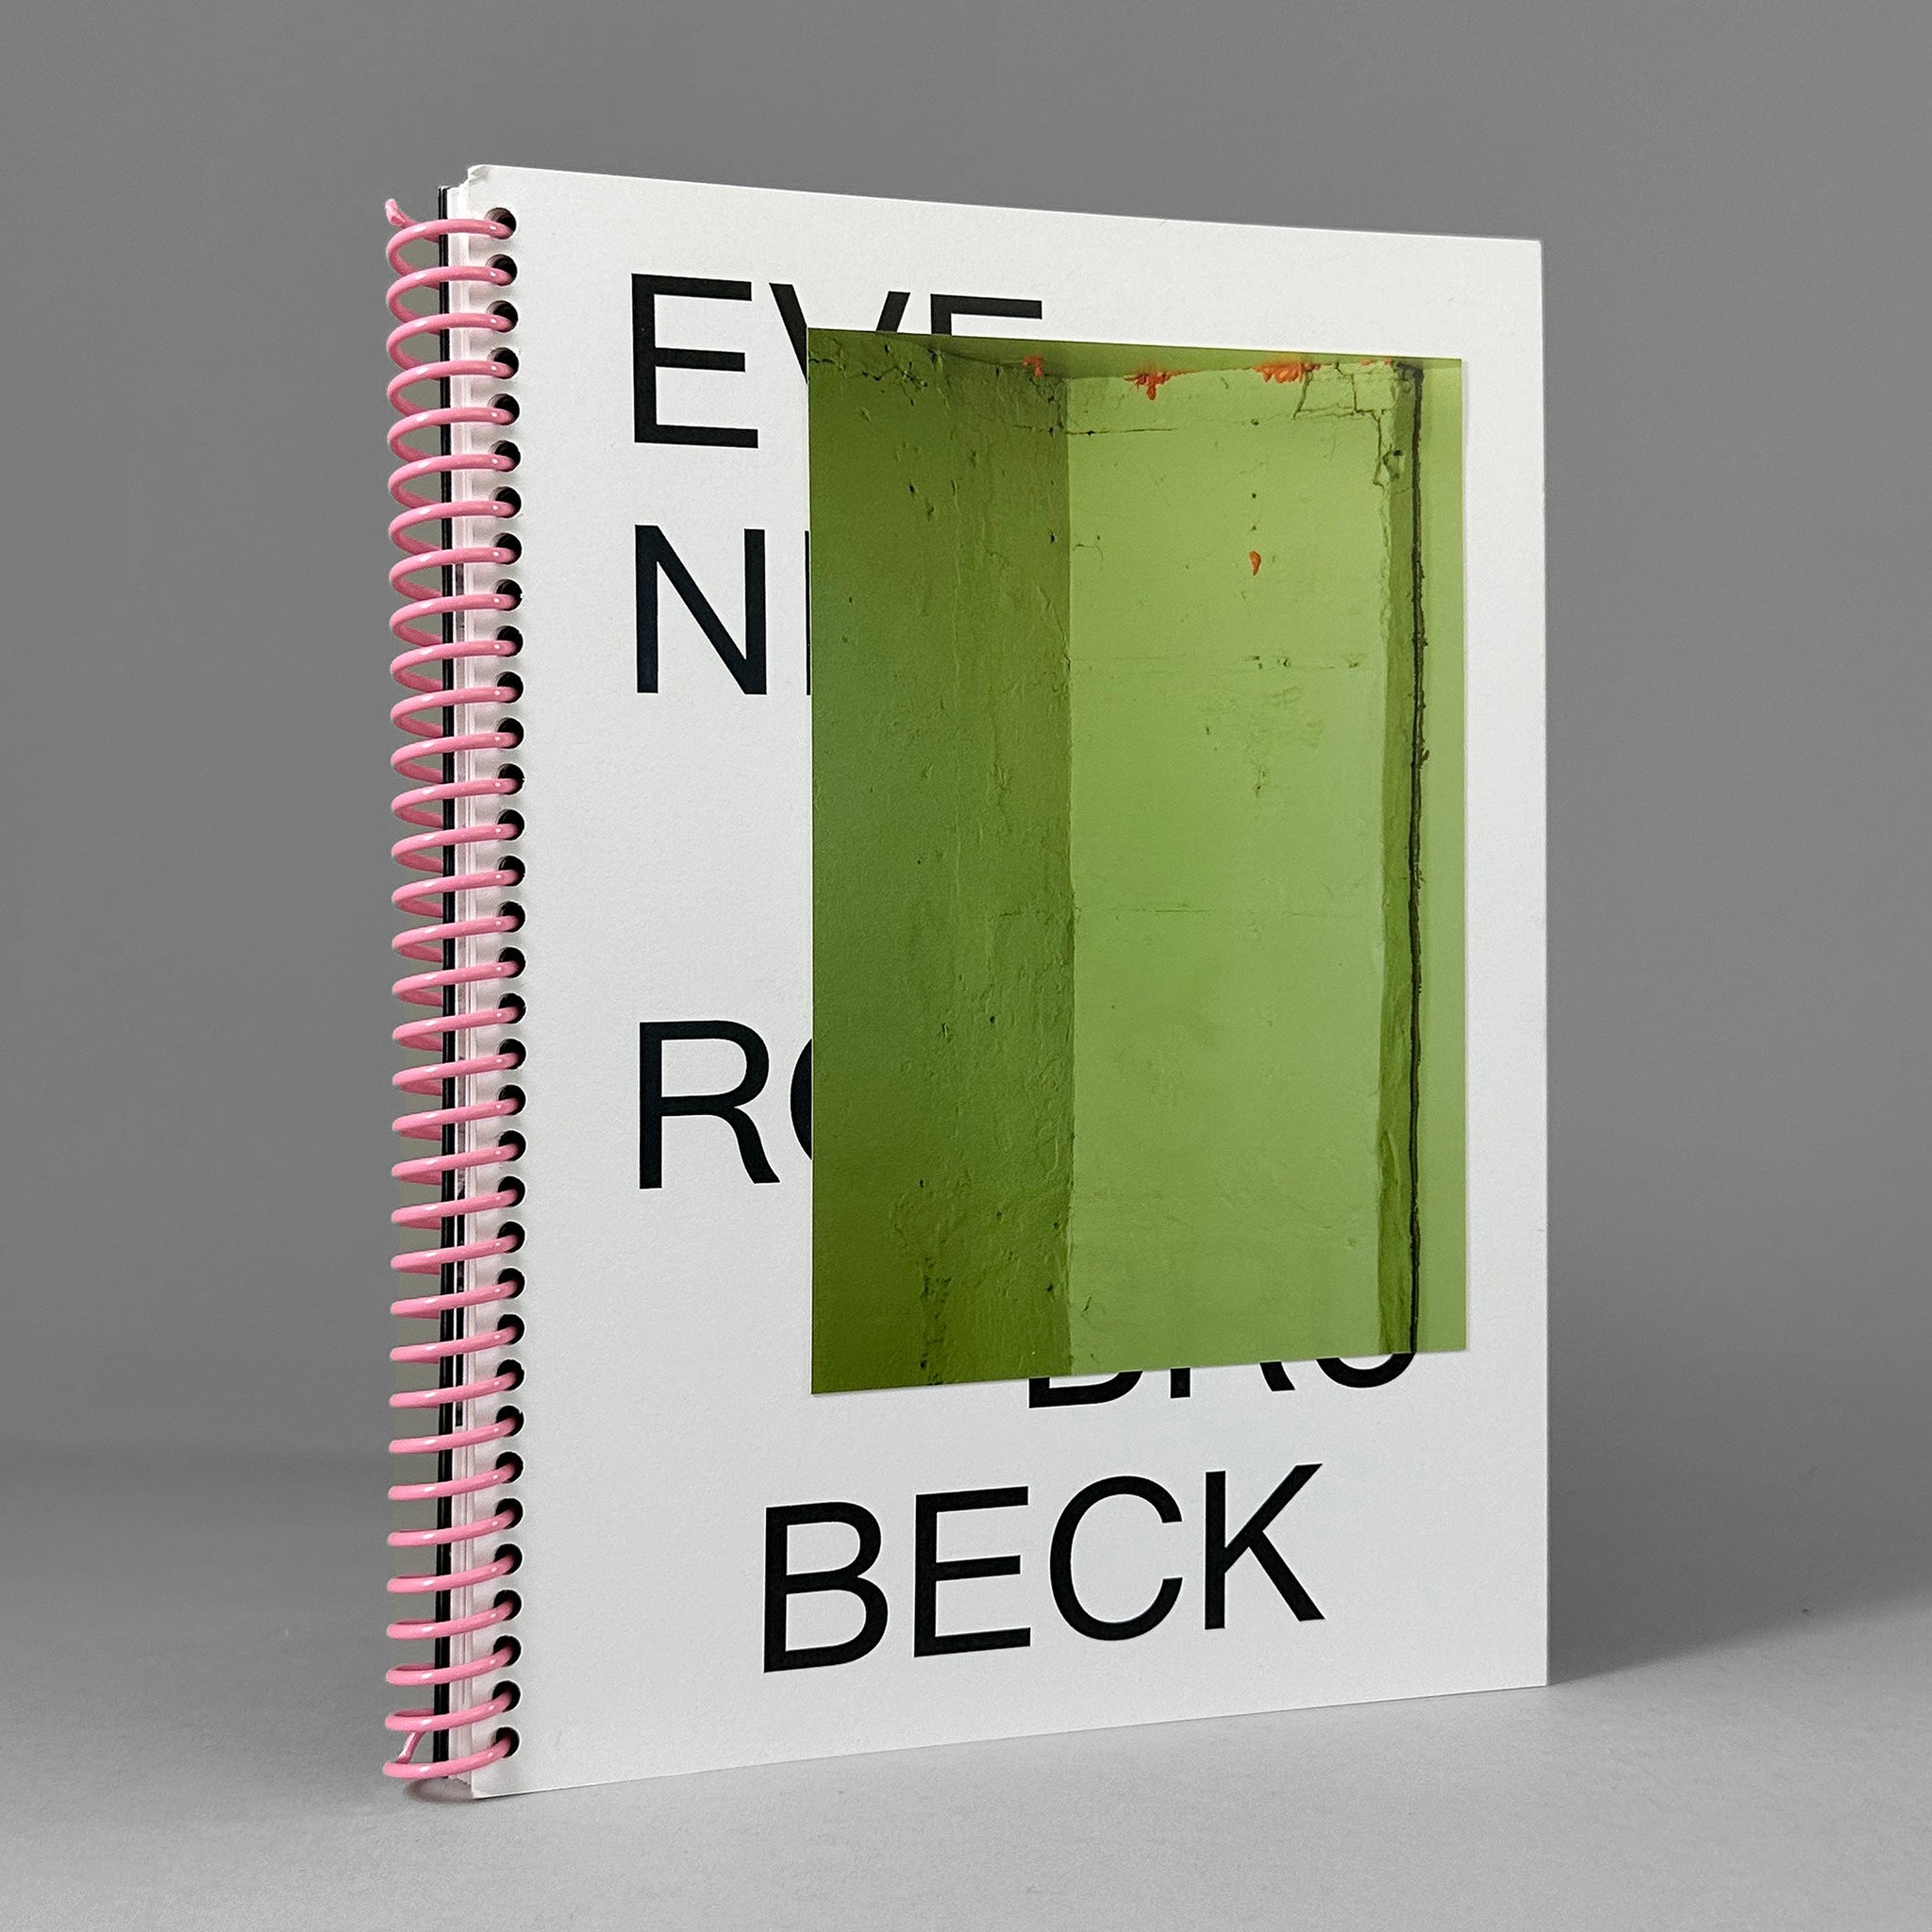 Evenin / Ross Brubeck